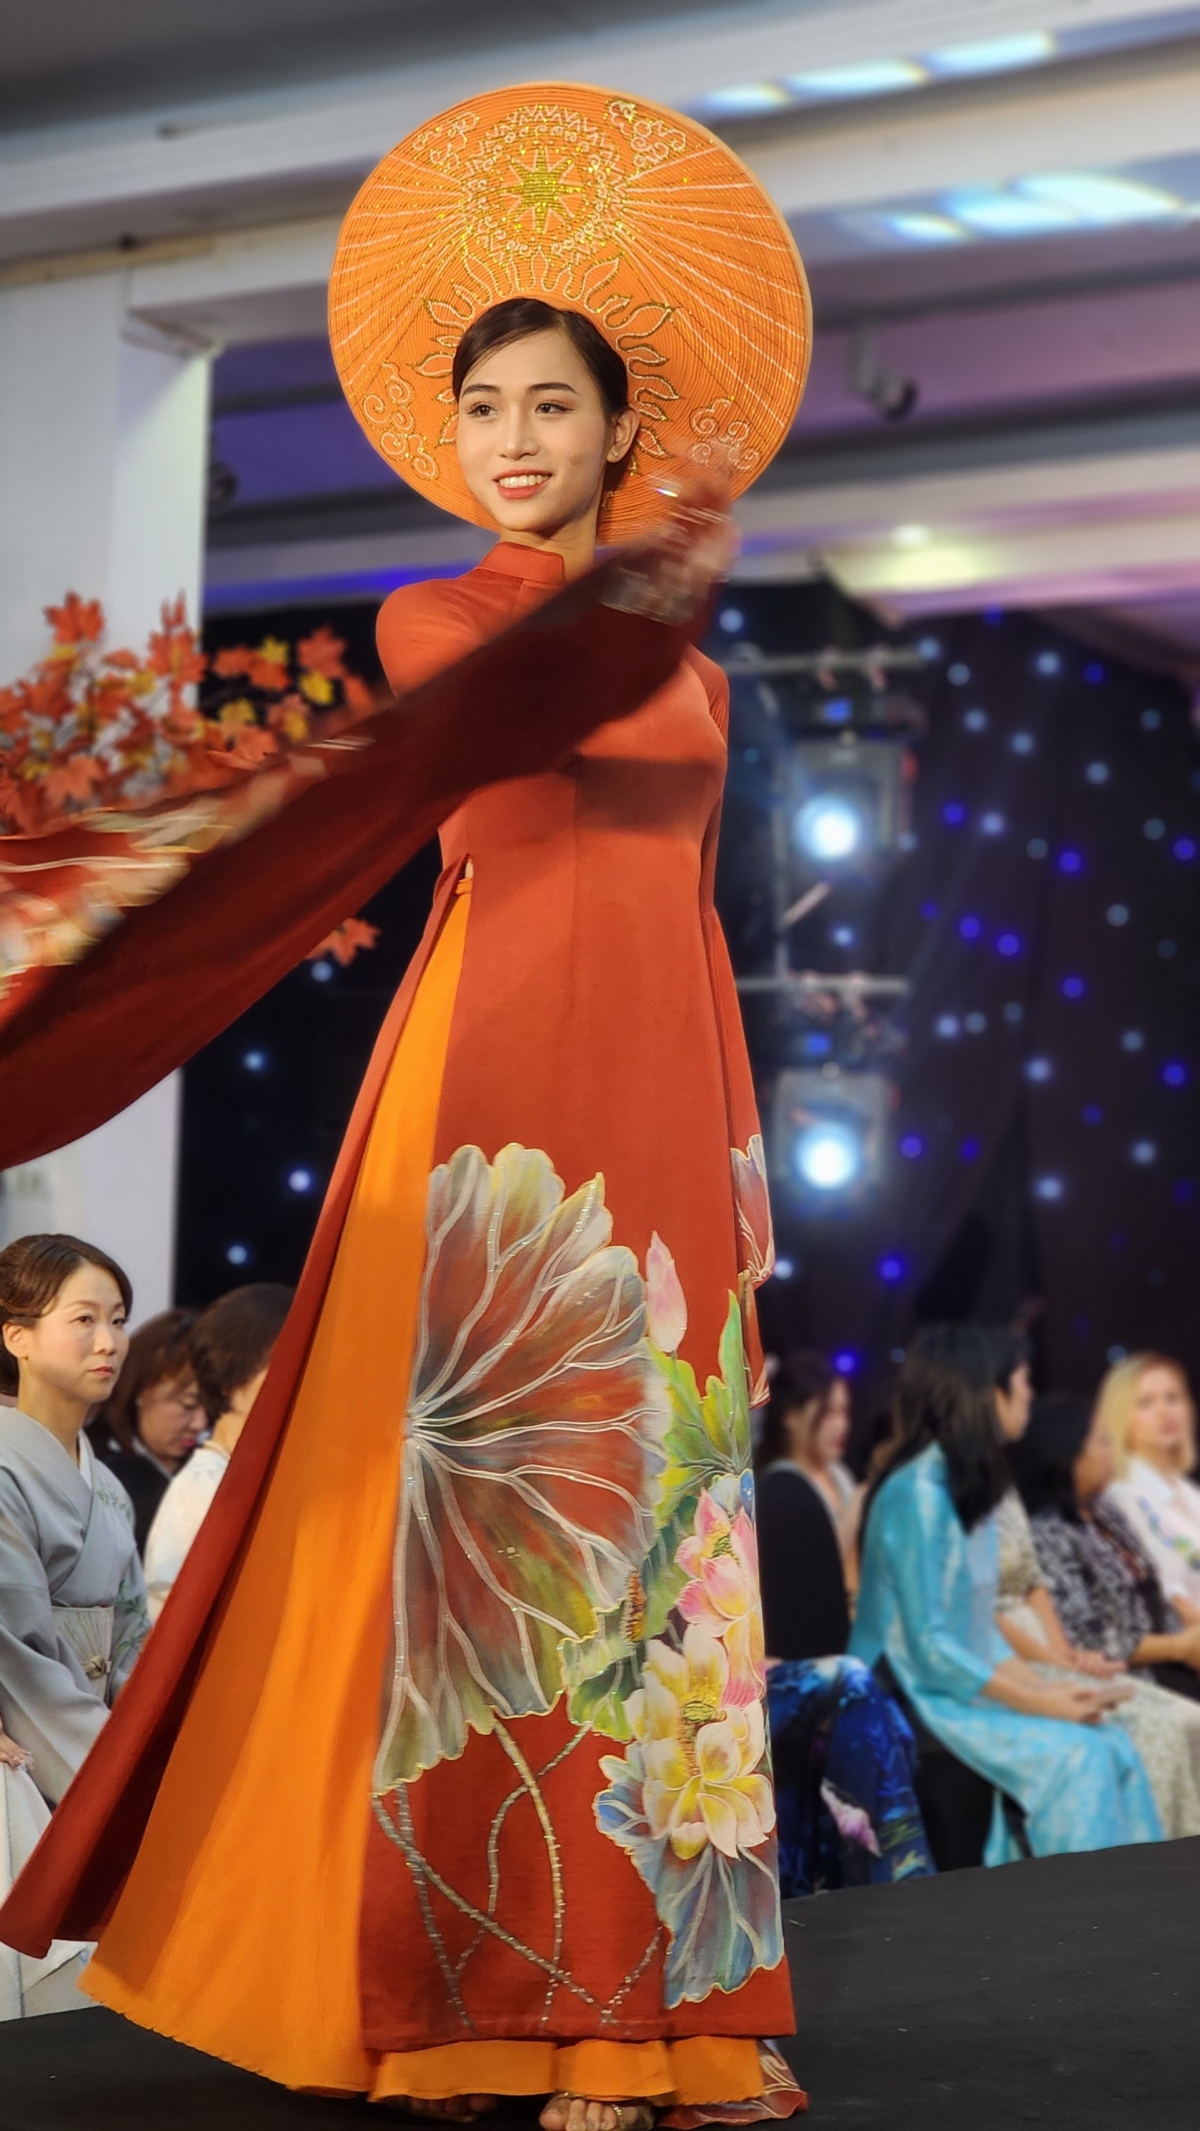 kimono-ao dai fashion show highlights vietnam-japan friendship picture 2